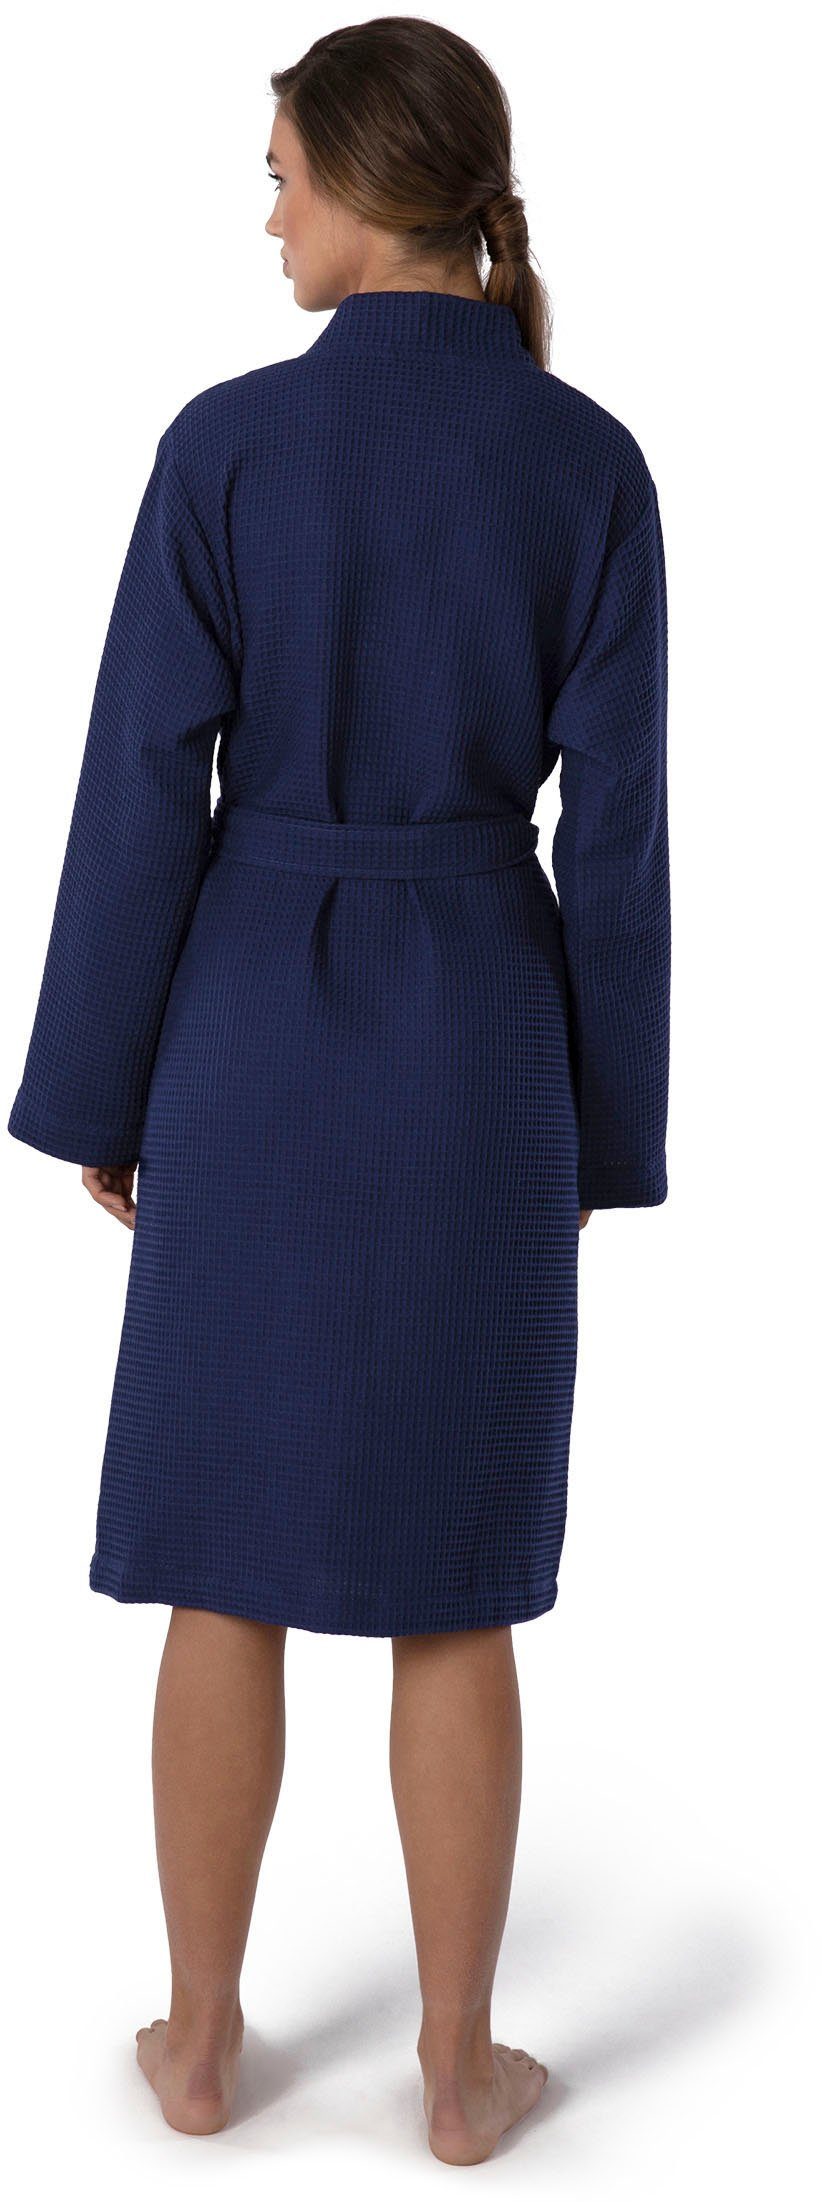 Möve Kimono Homewear, Kurzform, Piqué, Piquée-Oberfläche dunkelblau Gürtel, Kimono-Kragen